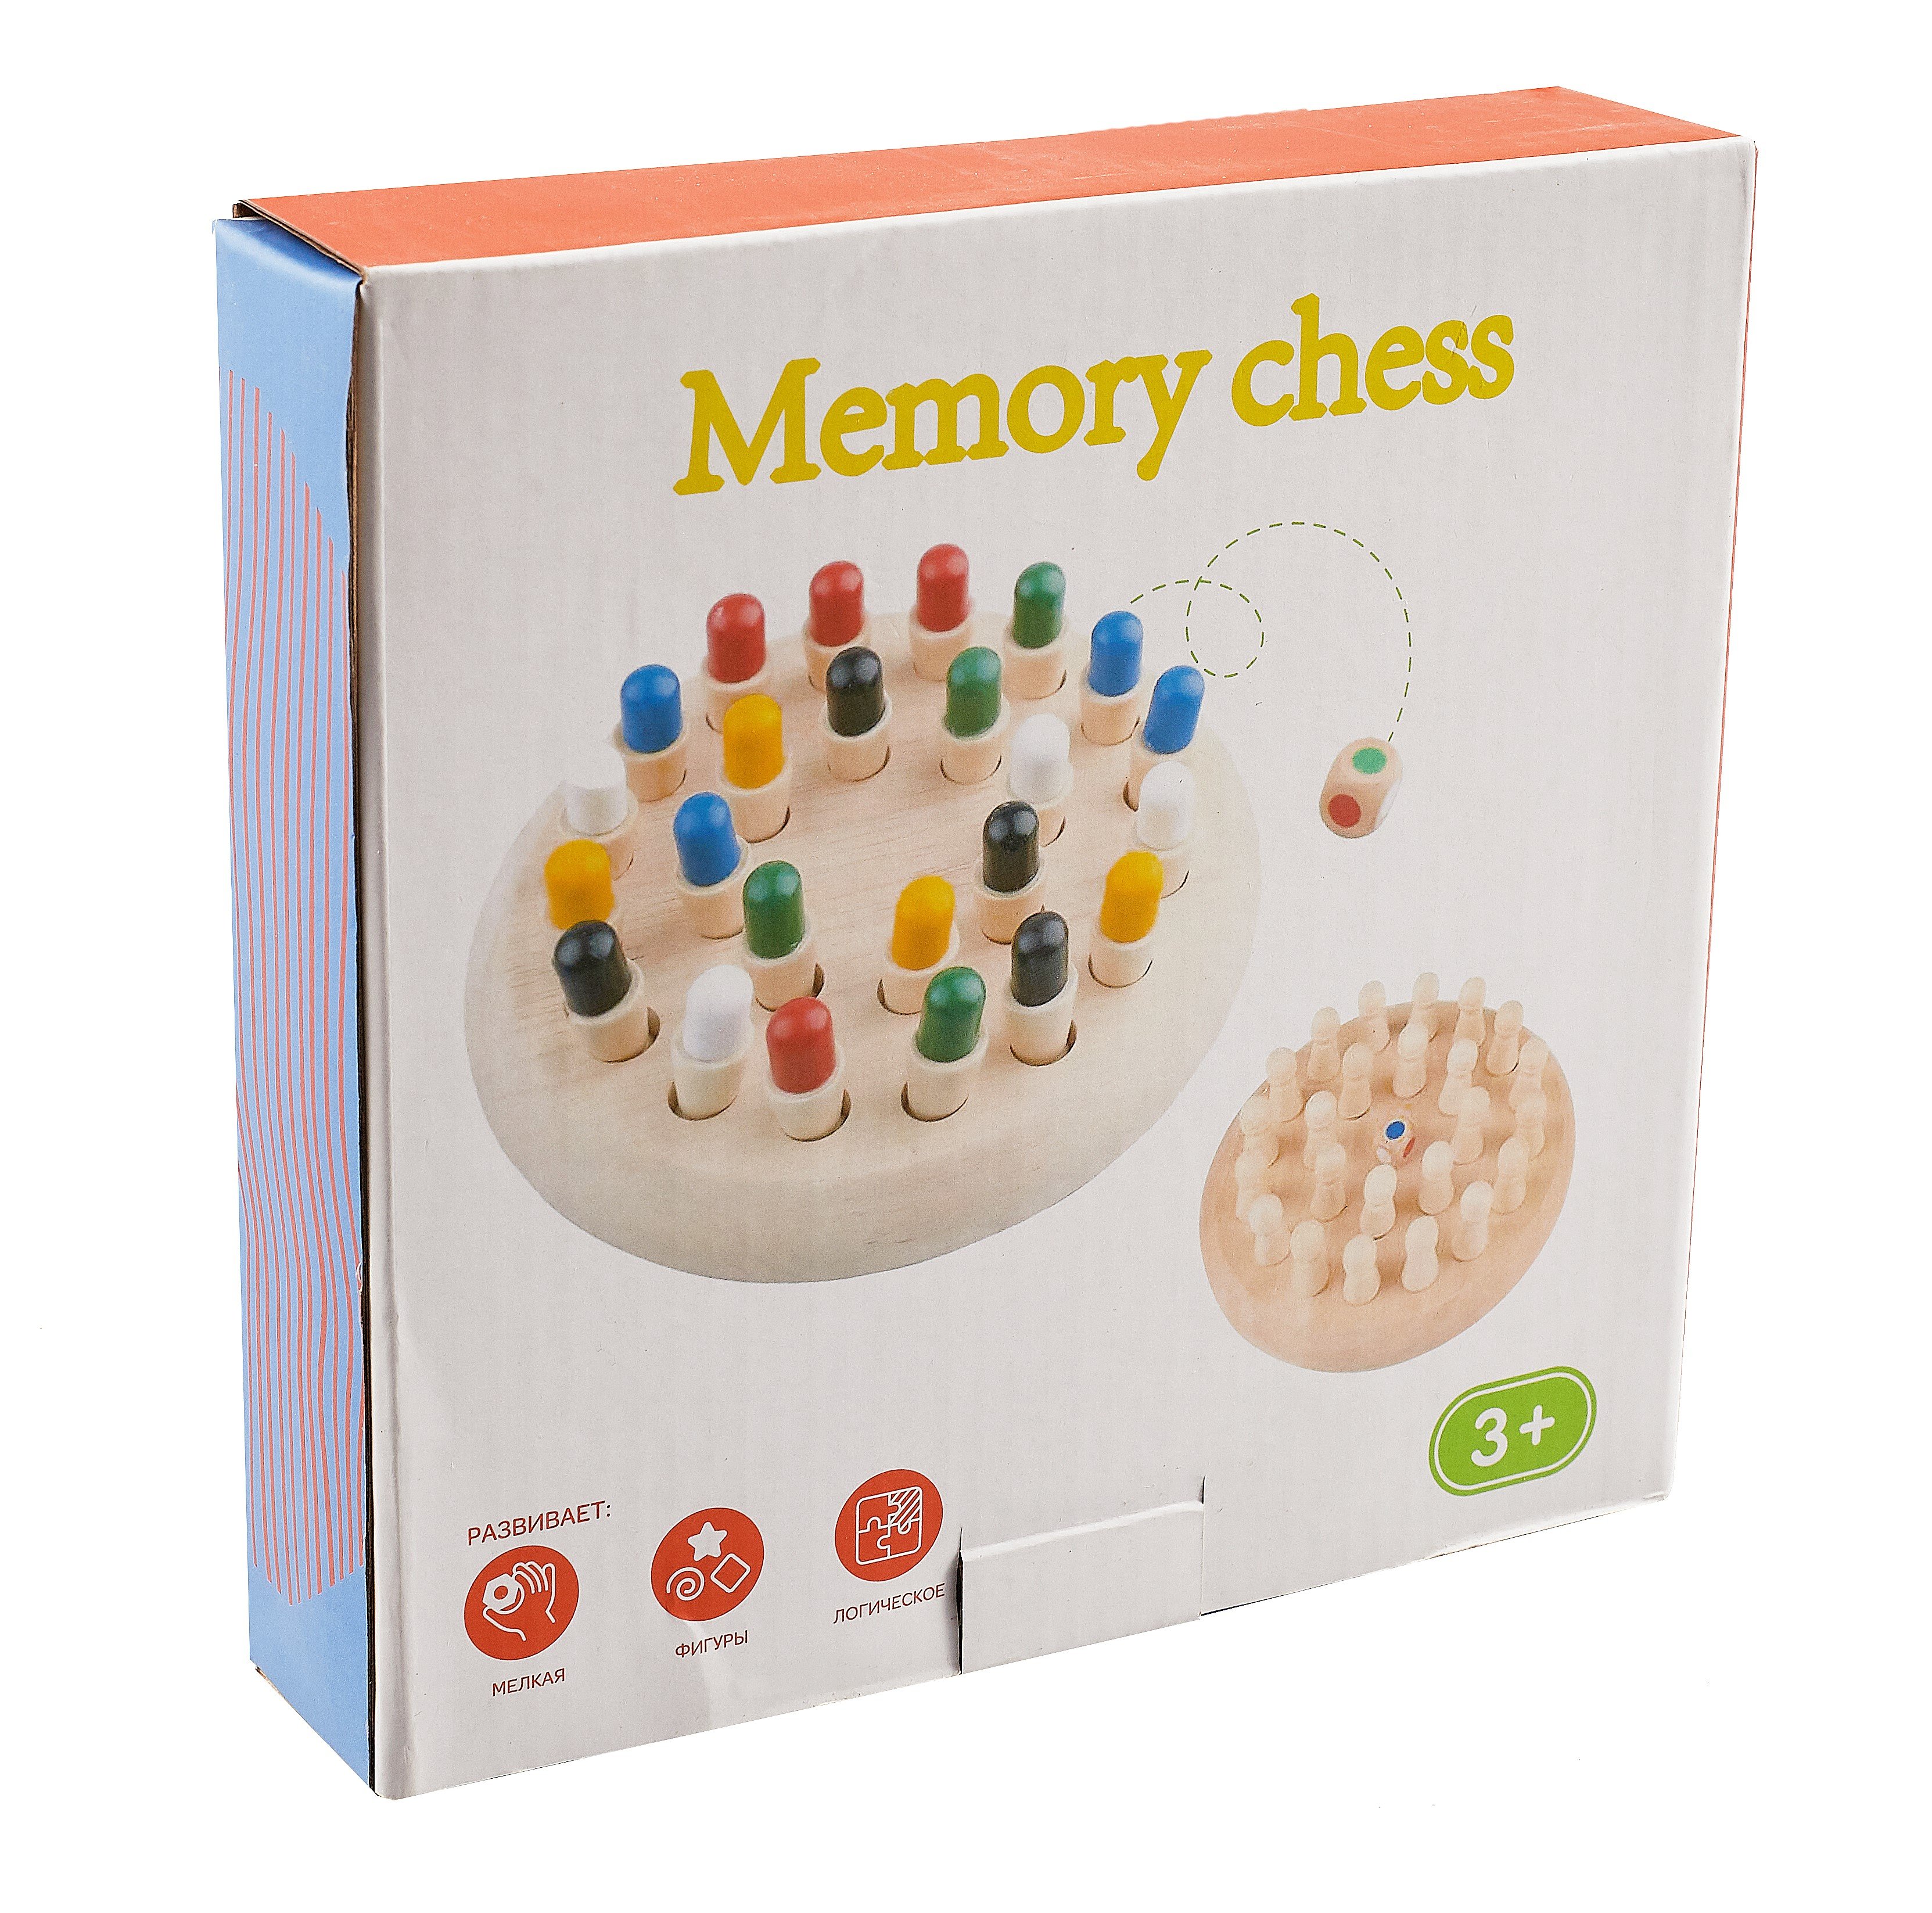    Memory chess/ 